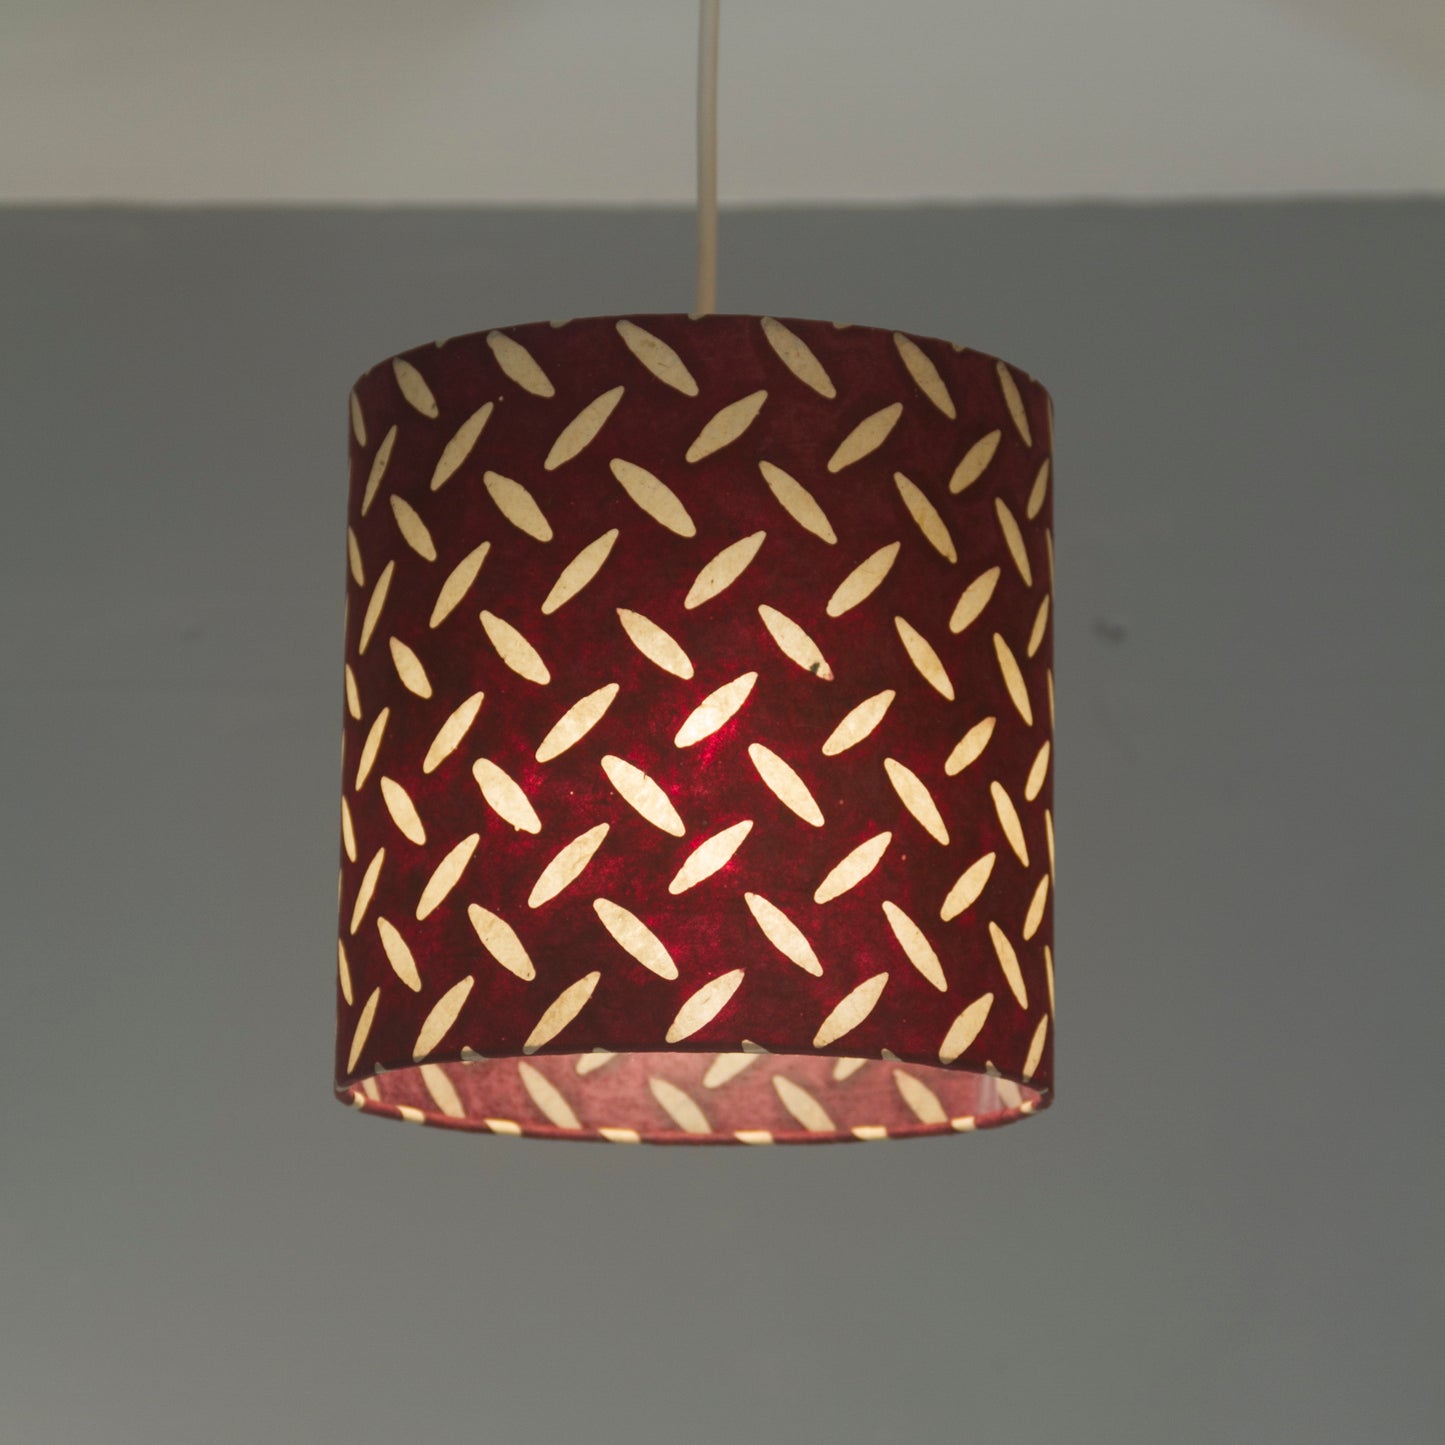 Oval Lamp Shade - P14 - Batik Tread Plate Cranberry, 30cm(w) x 20cm(h) x 22cm(d)